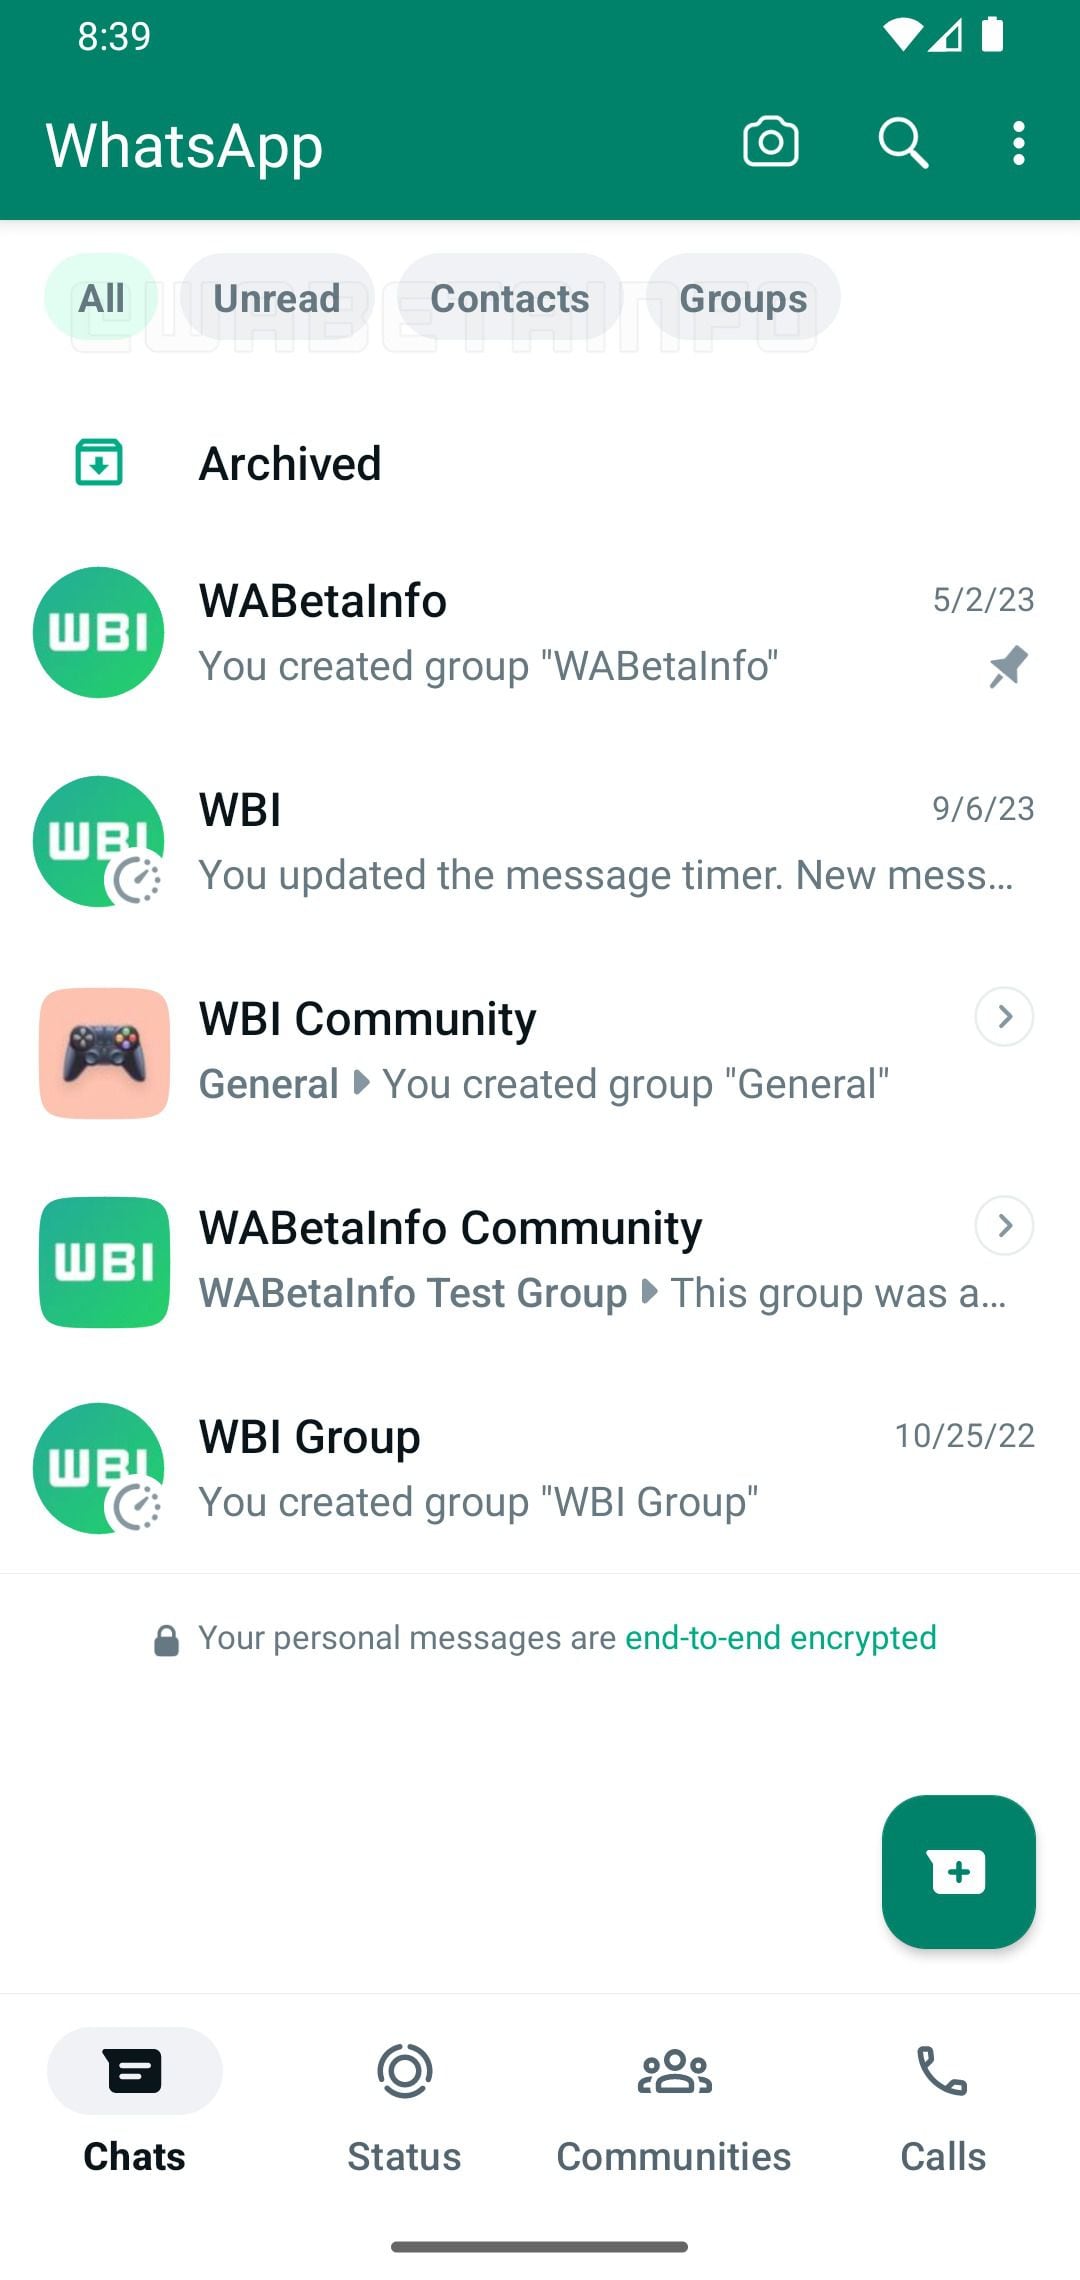 Filtro de conversaciones en WhatsApp para separar chats grupales y mensajes leídos en la aplicación. (WABetaInfo)